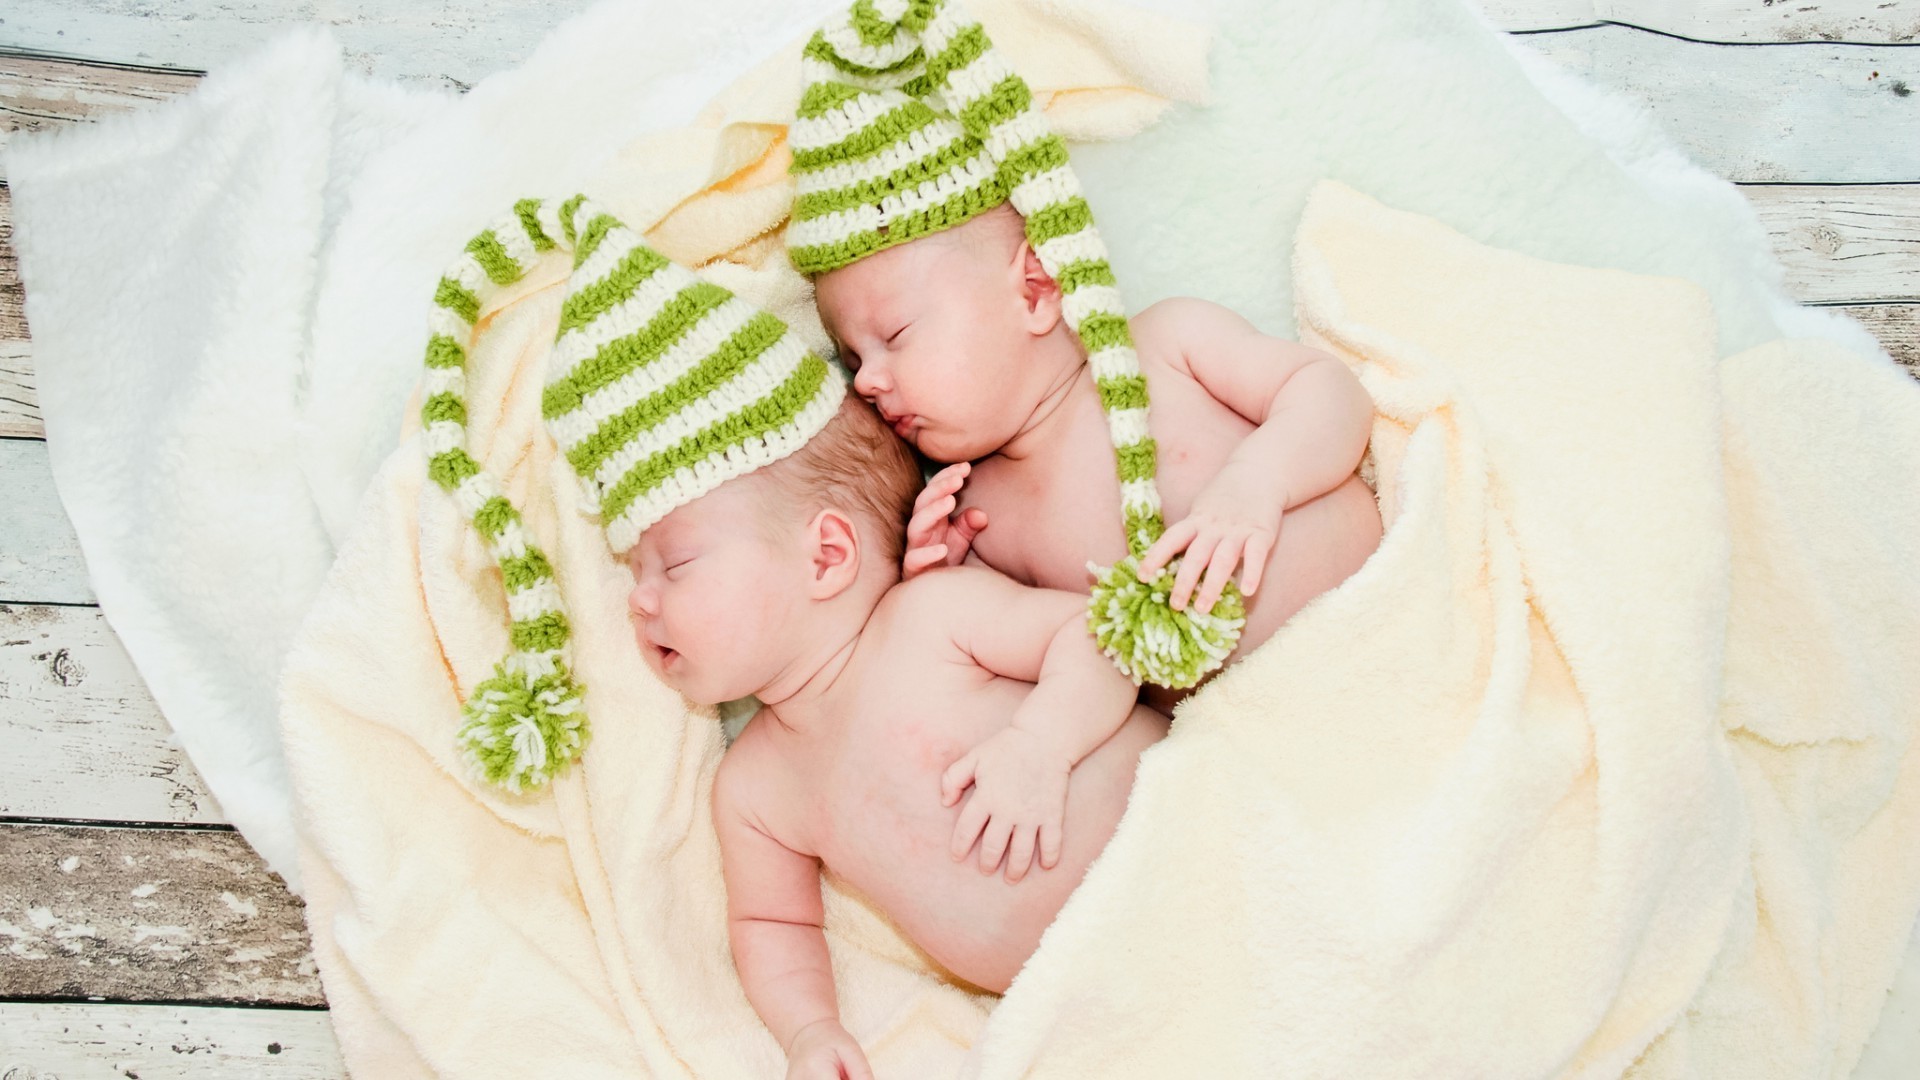 спящие дети любовь ребенок ребенок новорожденный семья мало милые кровать релаксация невинность в помещении